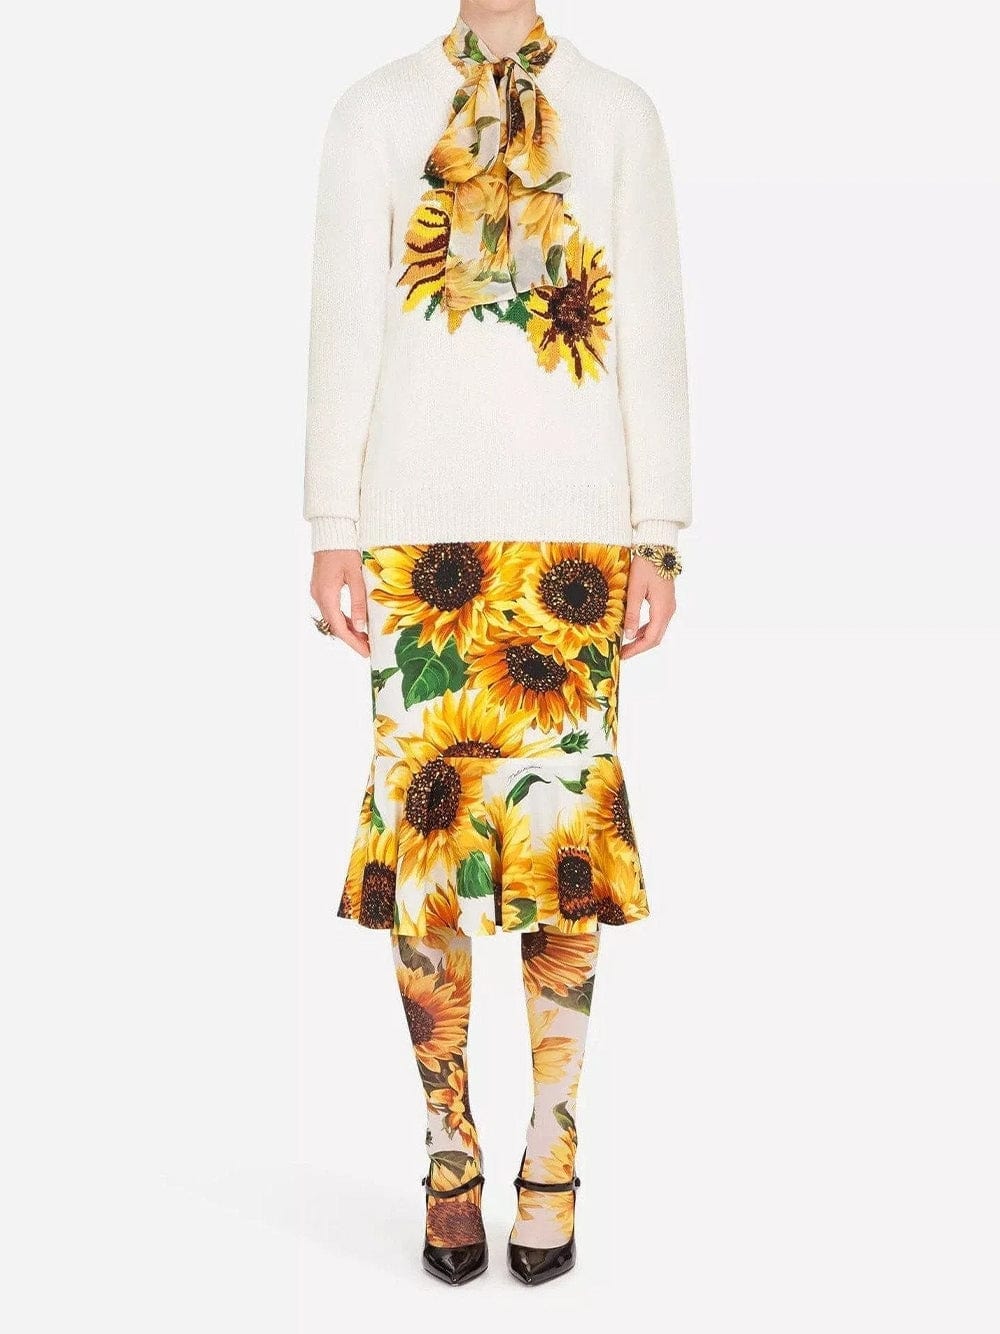 Dolce & Gabbana Sunflower Intarsia Sweater